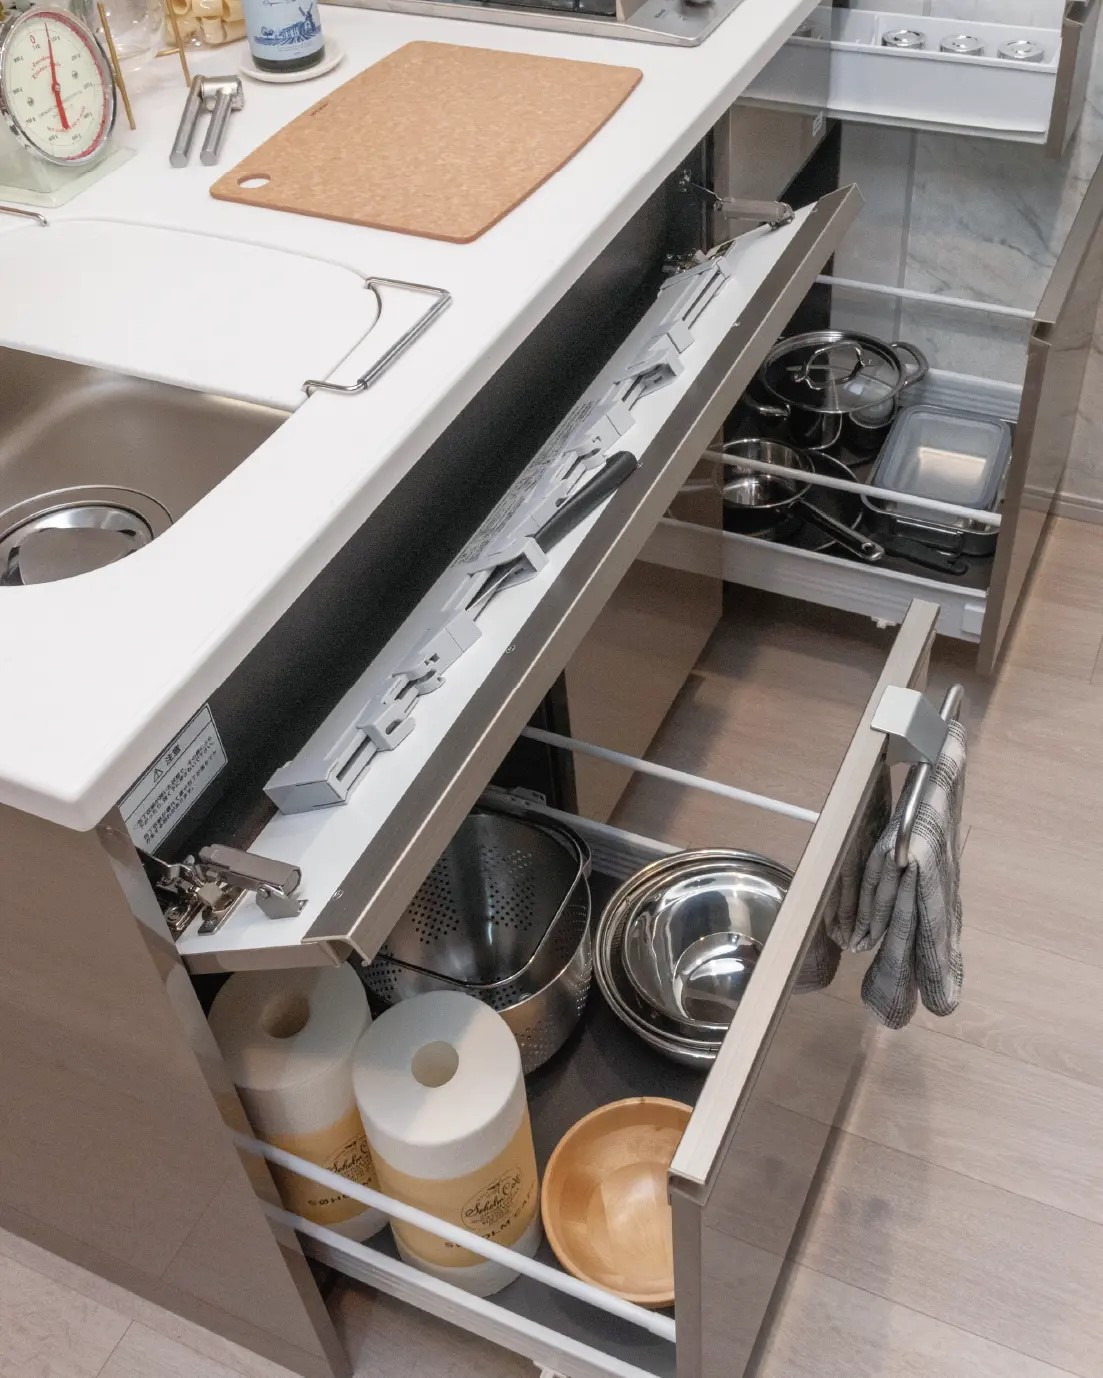 食器、調理器具、調味料などをすっきり収納。
引き出し式のキッチンキャビネット